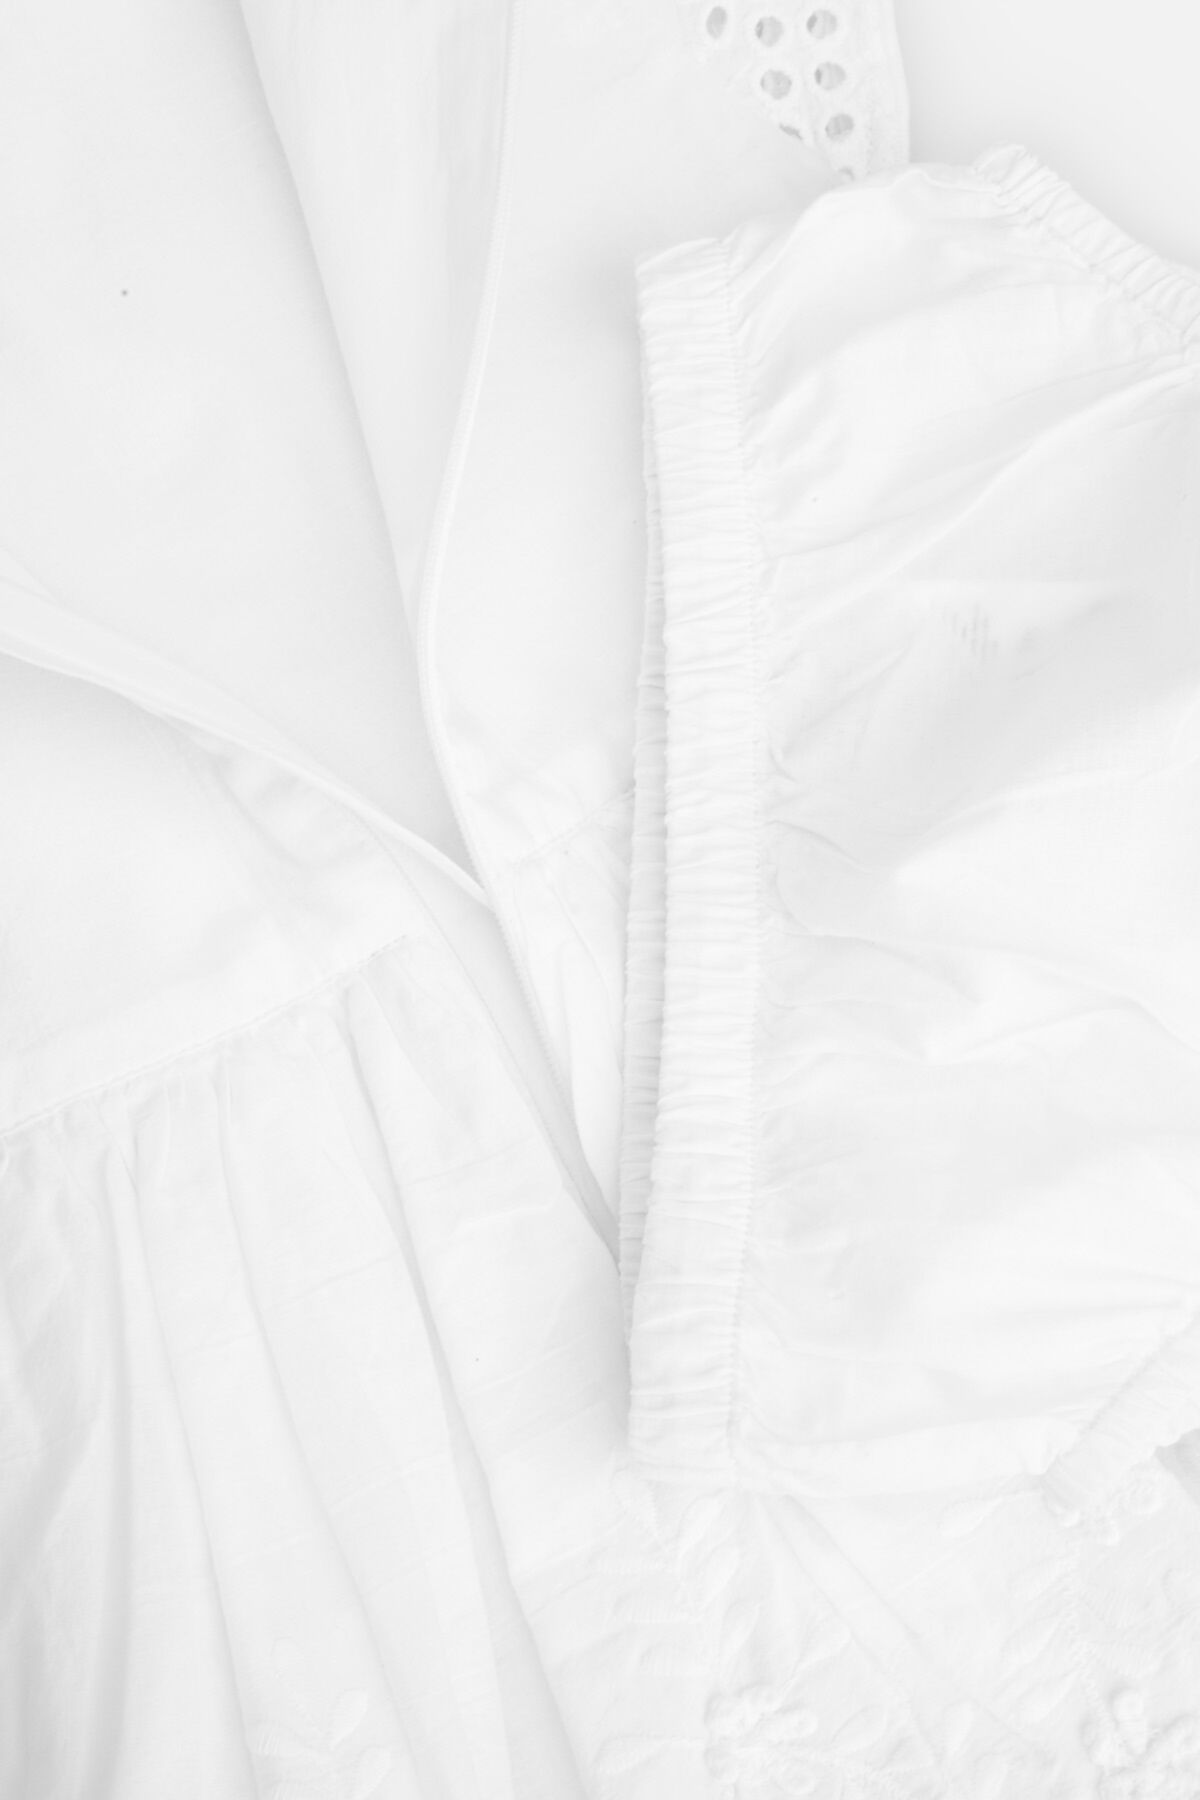 Sukienka tkaninowa biała z koronkowymi wykończeniami 2235499